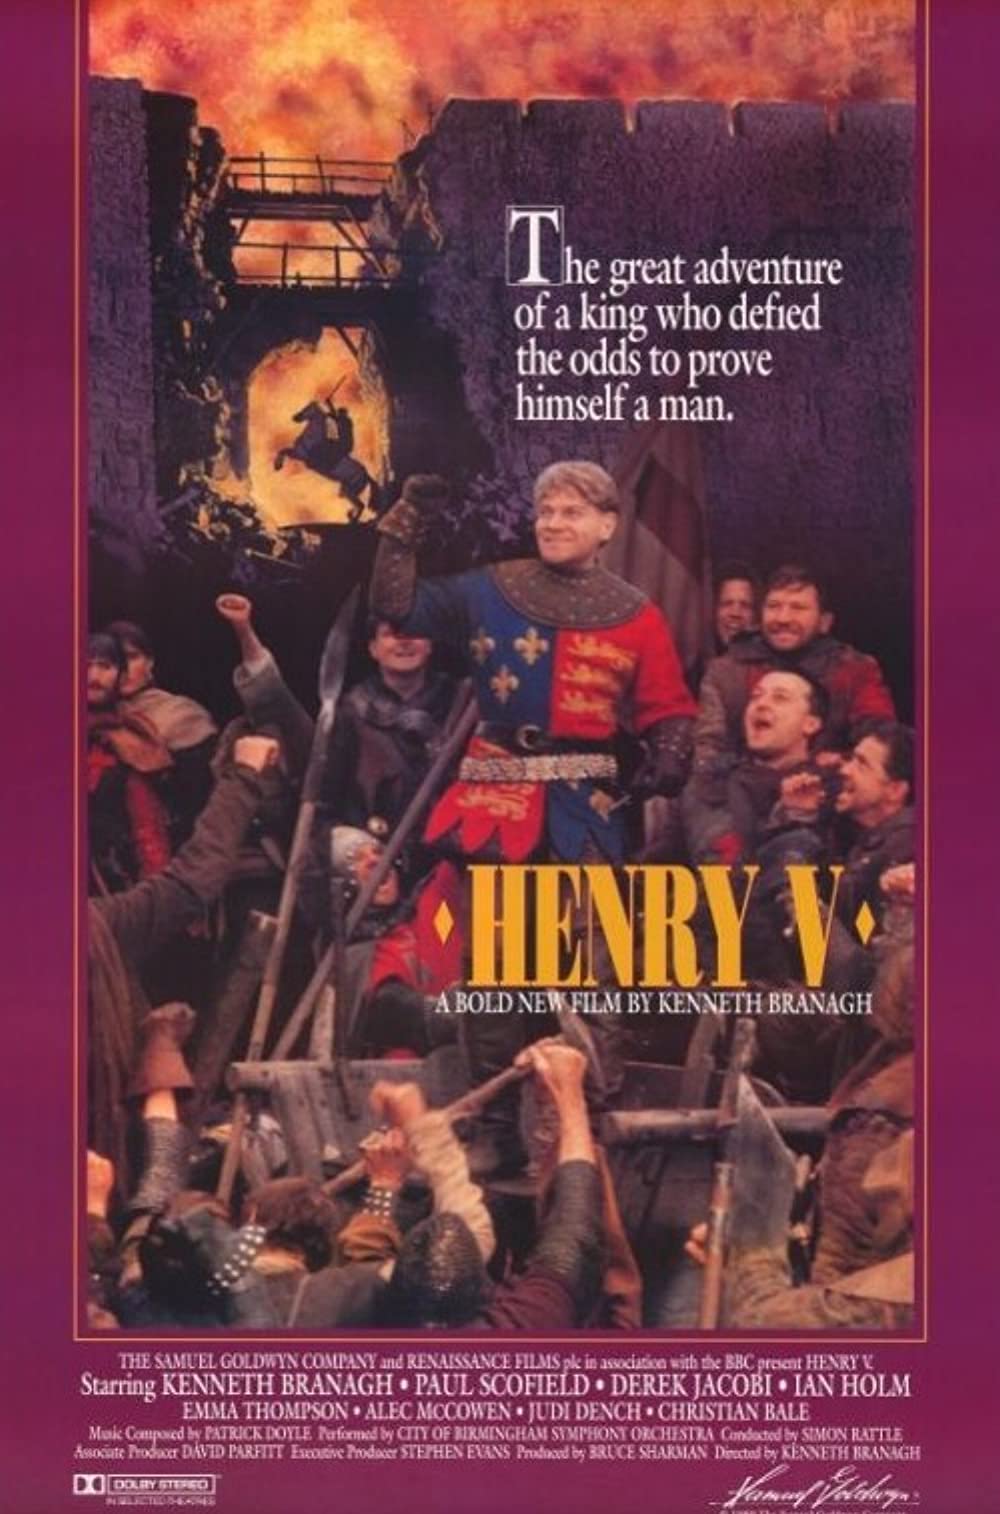 ดูหนังออนไลน์ฟรี Henry V (1989) เฮนรี่ที่ 5 จอมราชันย์